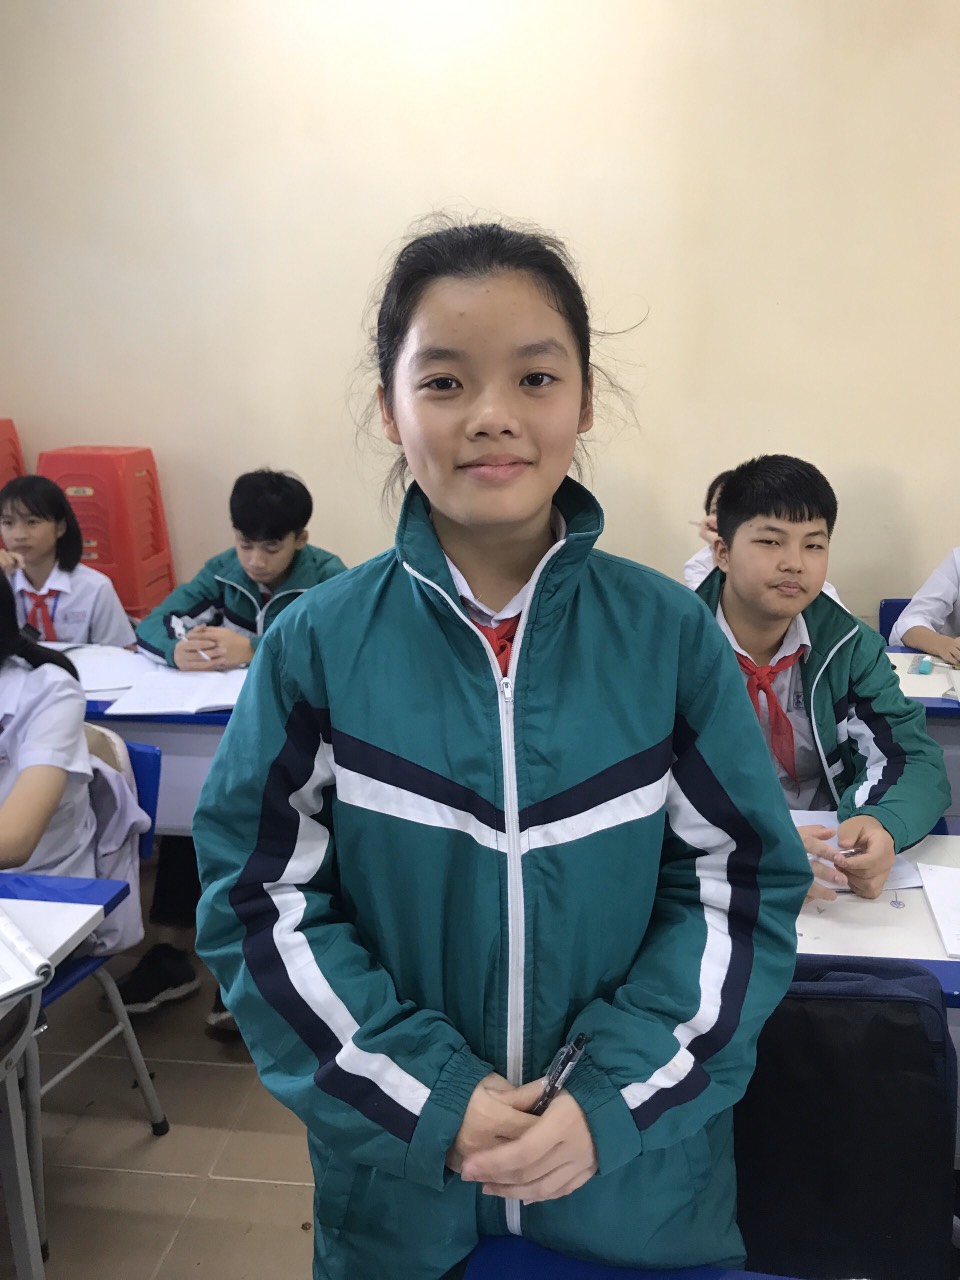 Hoàng Mai Trang, Học sinh lớp 8D, Trường THCS Lê Quý Đôn, TX Quảng Yên - một trong 6 đại biểu thiếu nhi Quảng Ninh dự đại hội cháu ngoan Bác Hồ toàn quốc năm 2020.